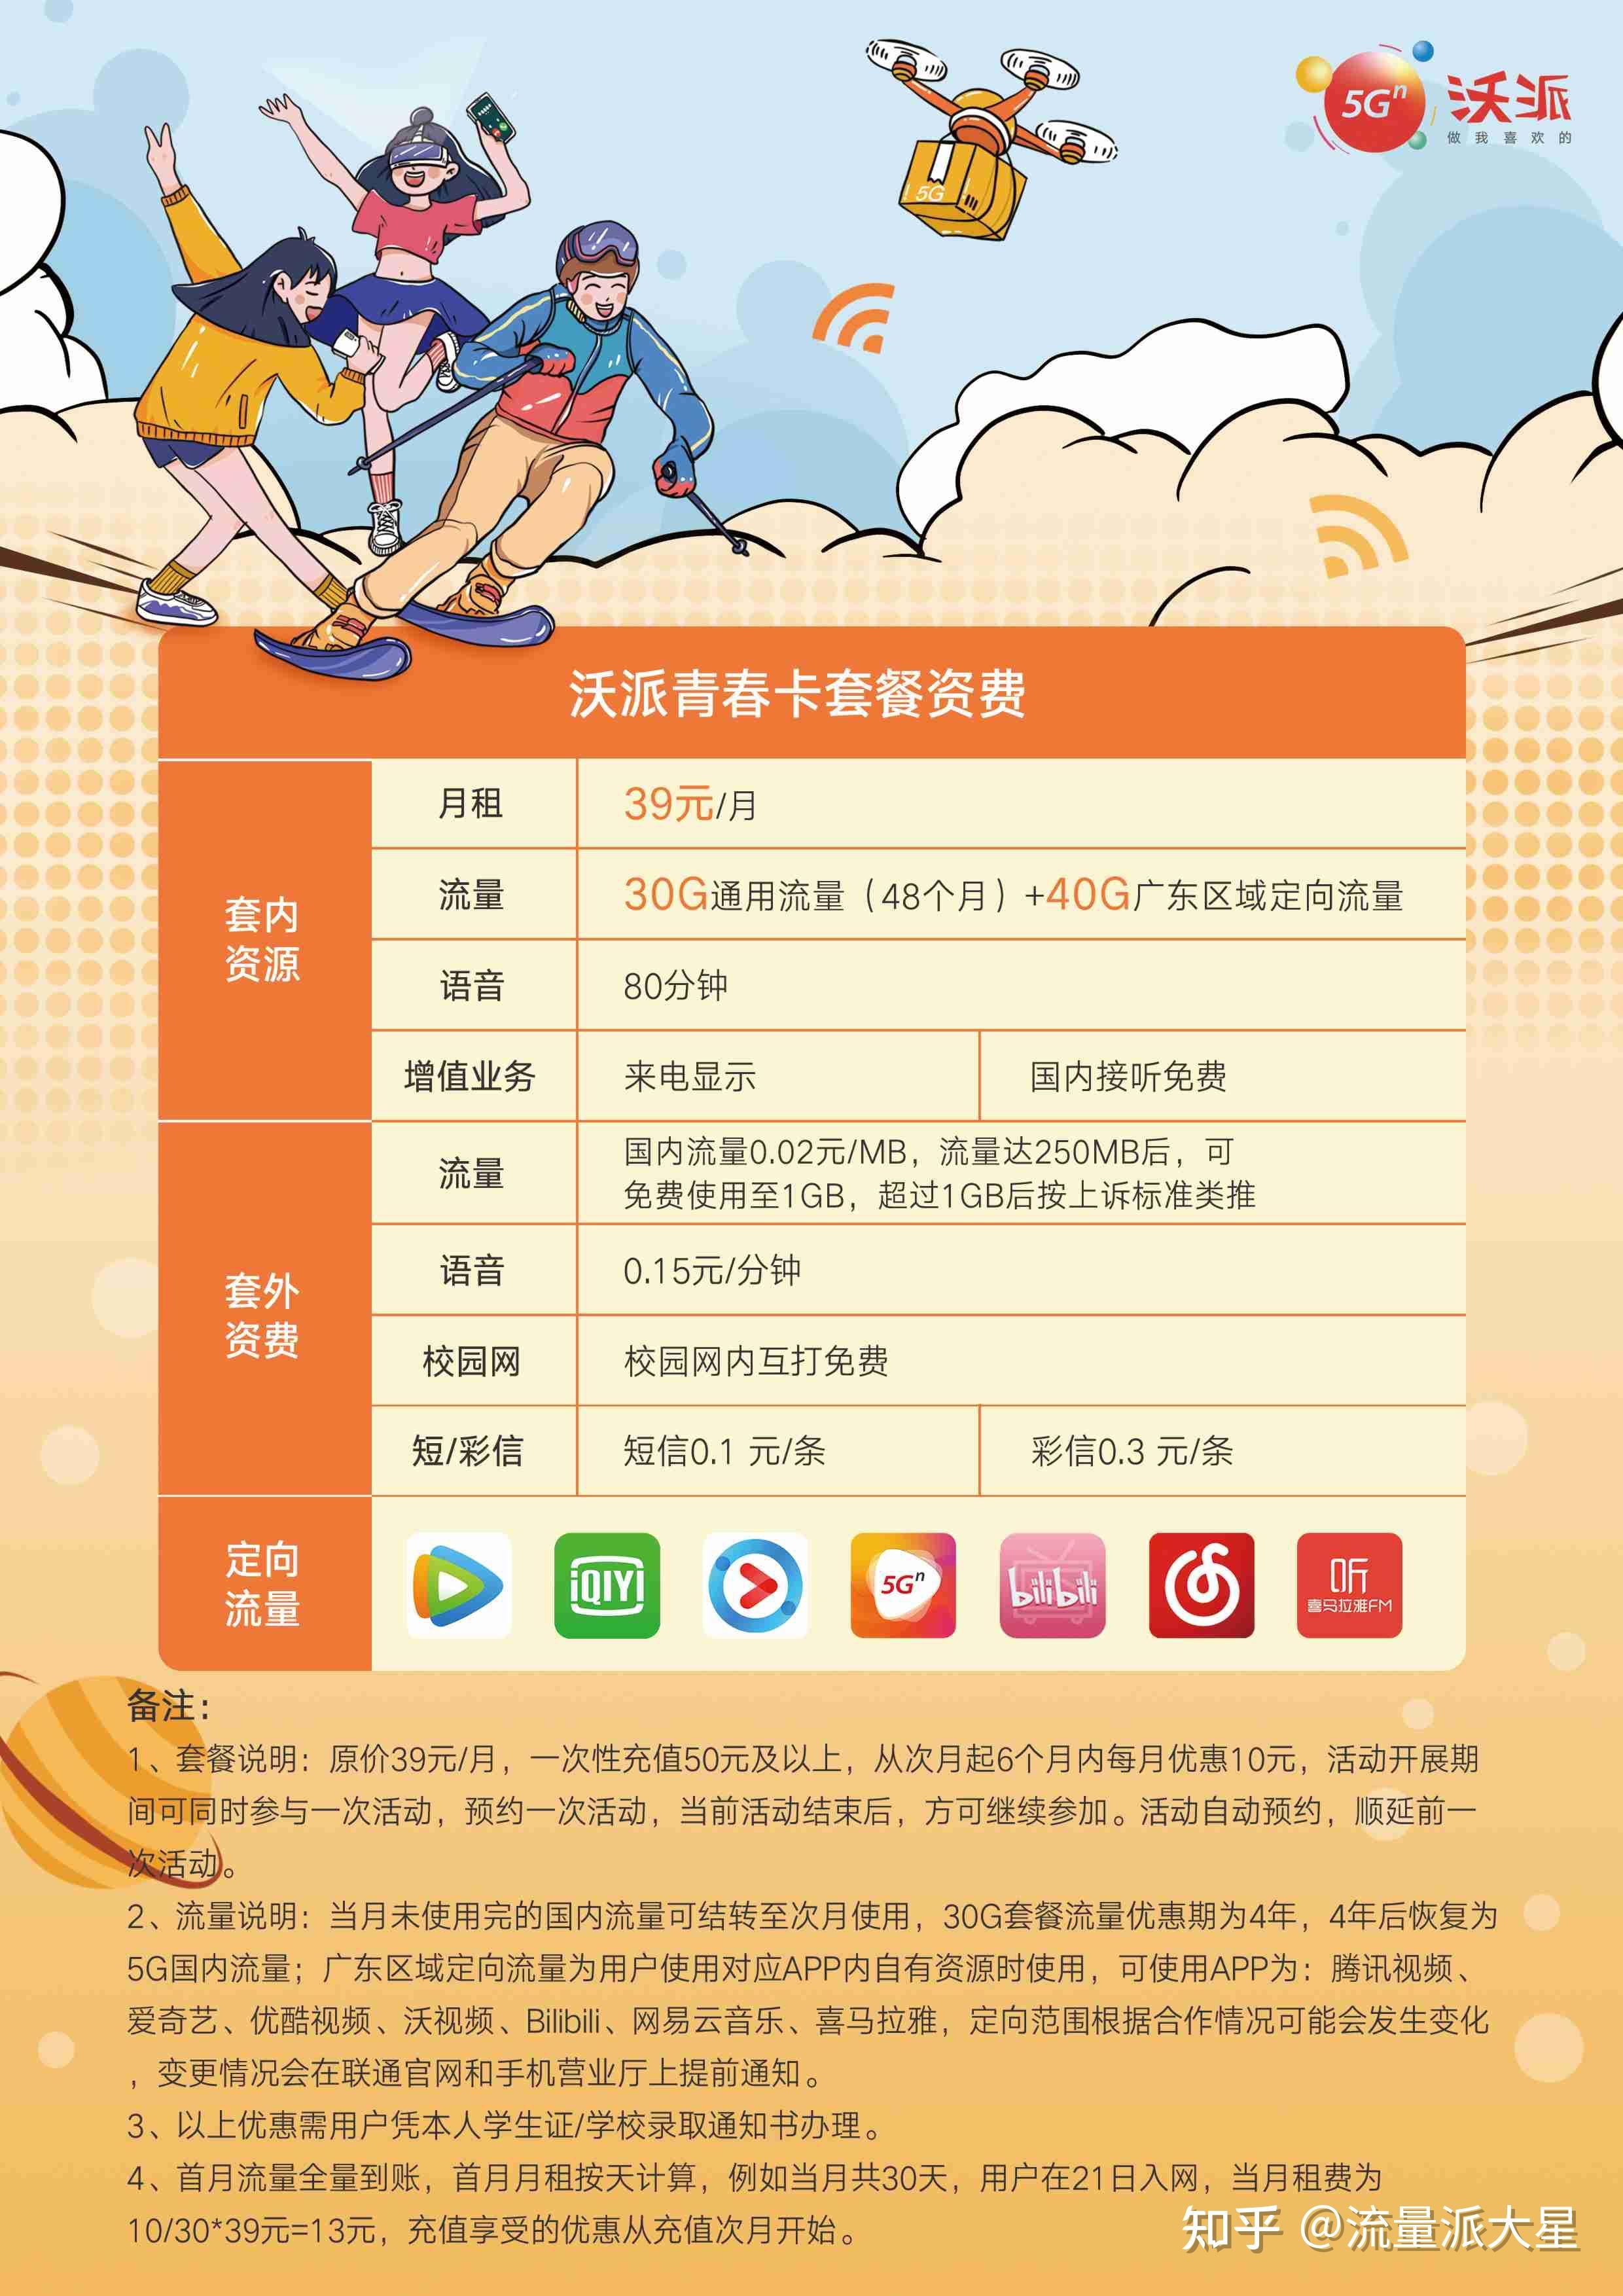 2021年手机卡推荐,北京电信校园卡等3款神卡套餐详解!